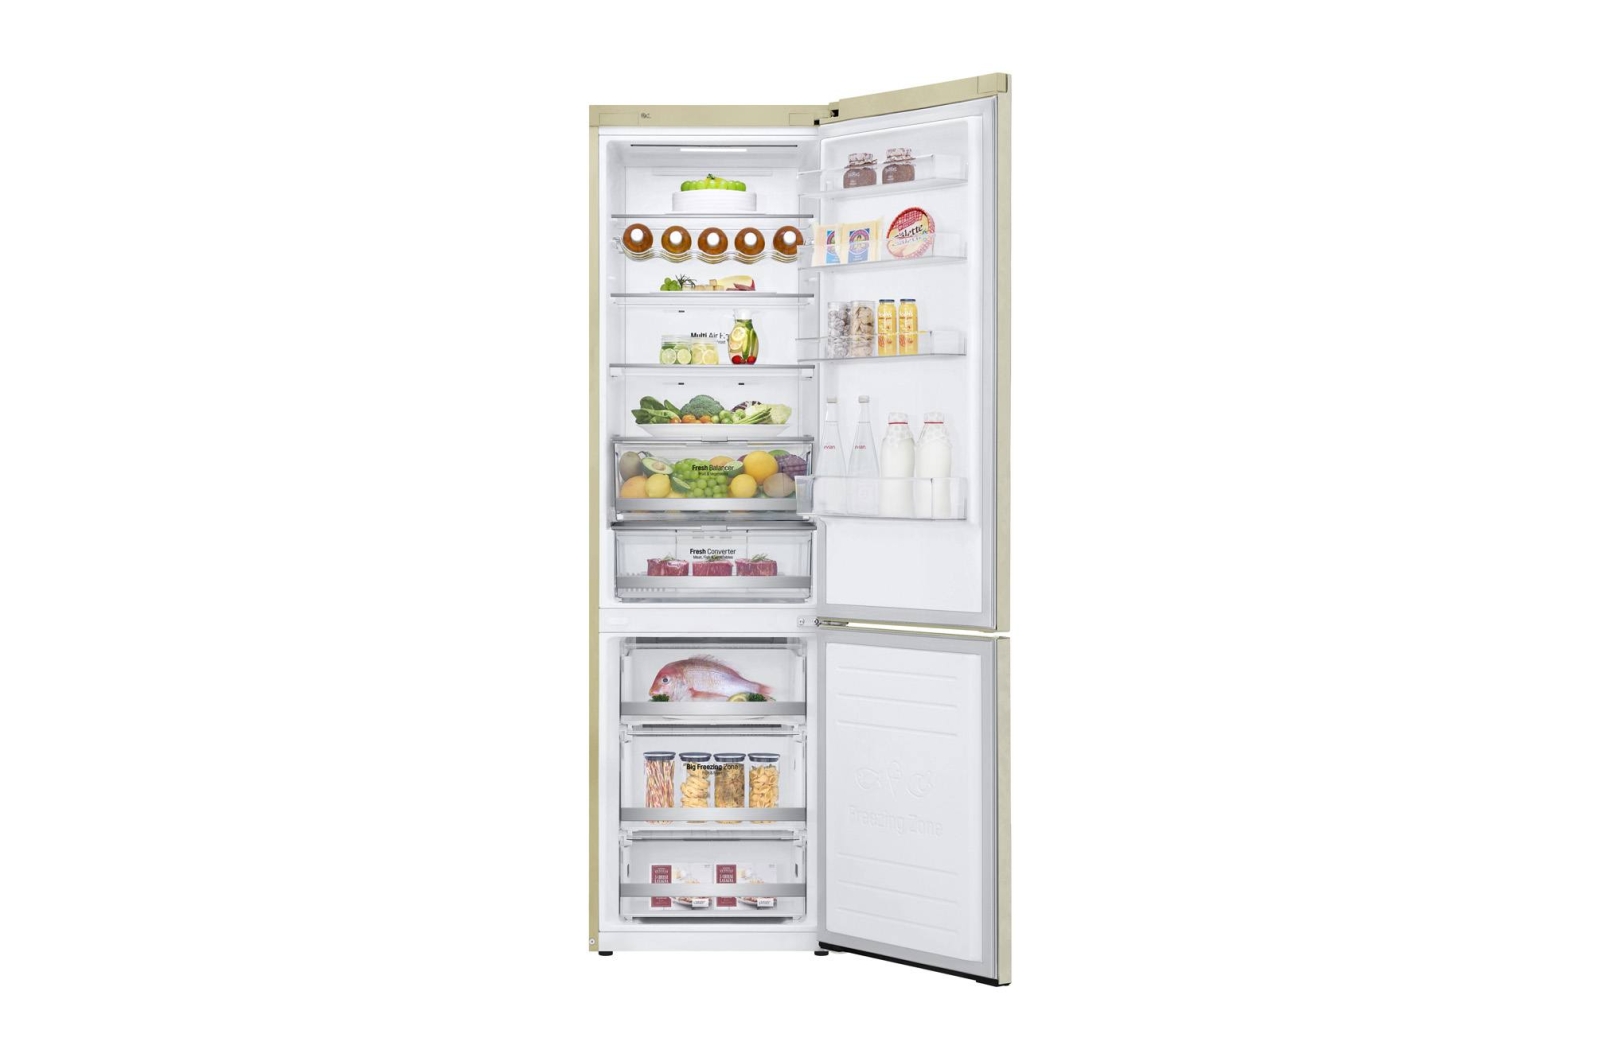 холодильник lg ga-b509sedz, купить в Красноярске холодильник lg ga-b509sedz,  купить в Красноярске дешево холодильник lg ga-b509sedz, купить в Красноярске минимальной цене холодильник lg ga-b509sedz